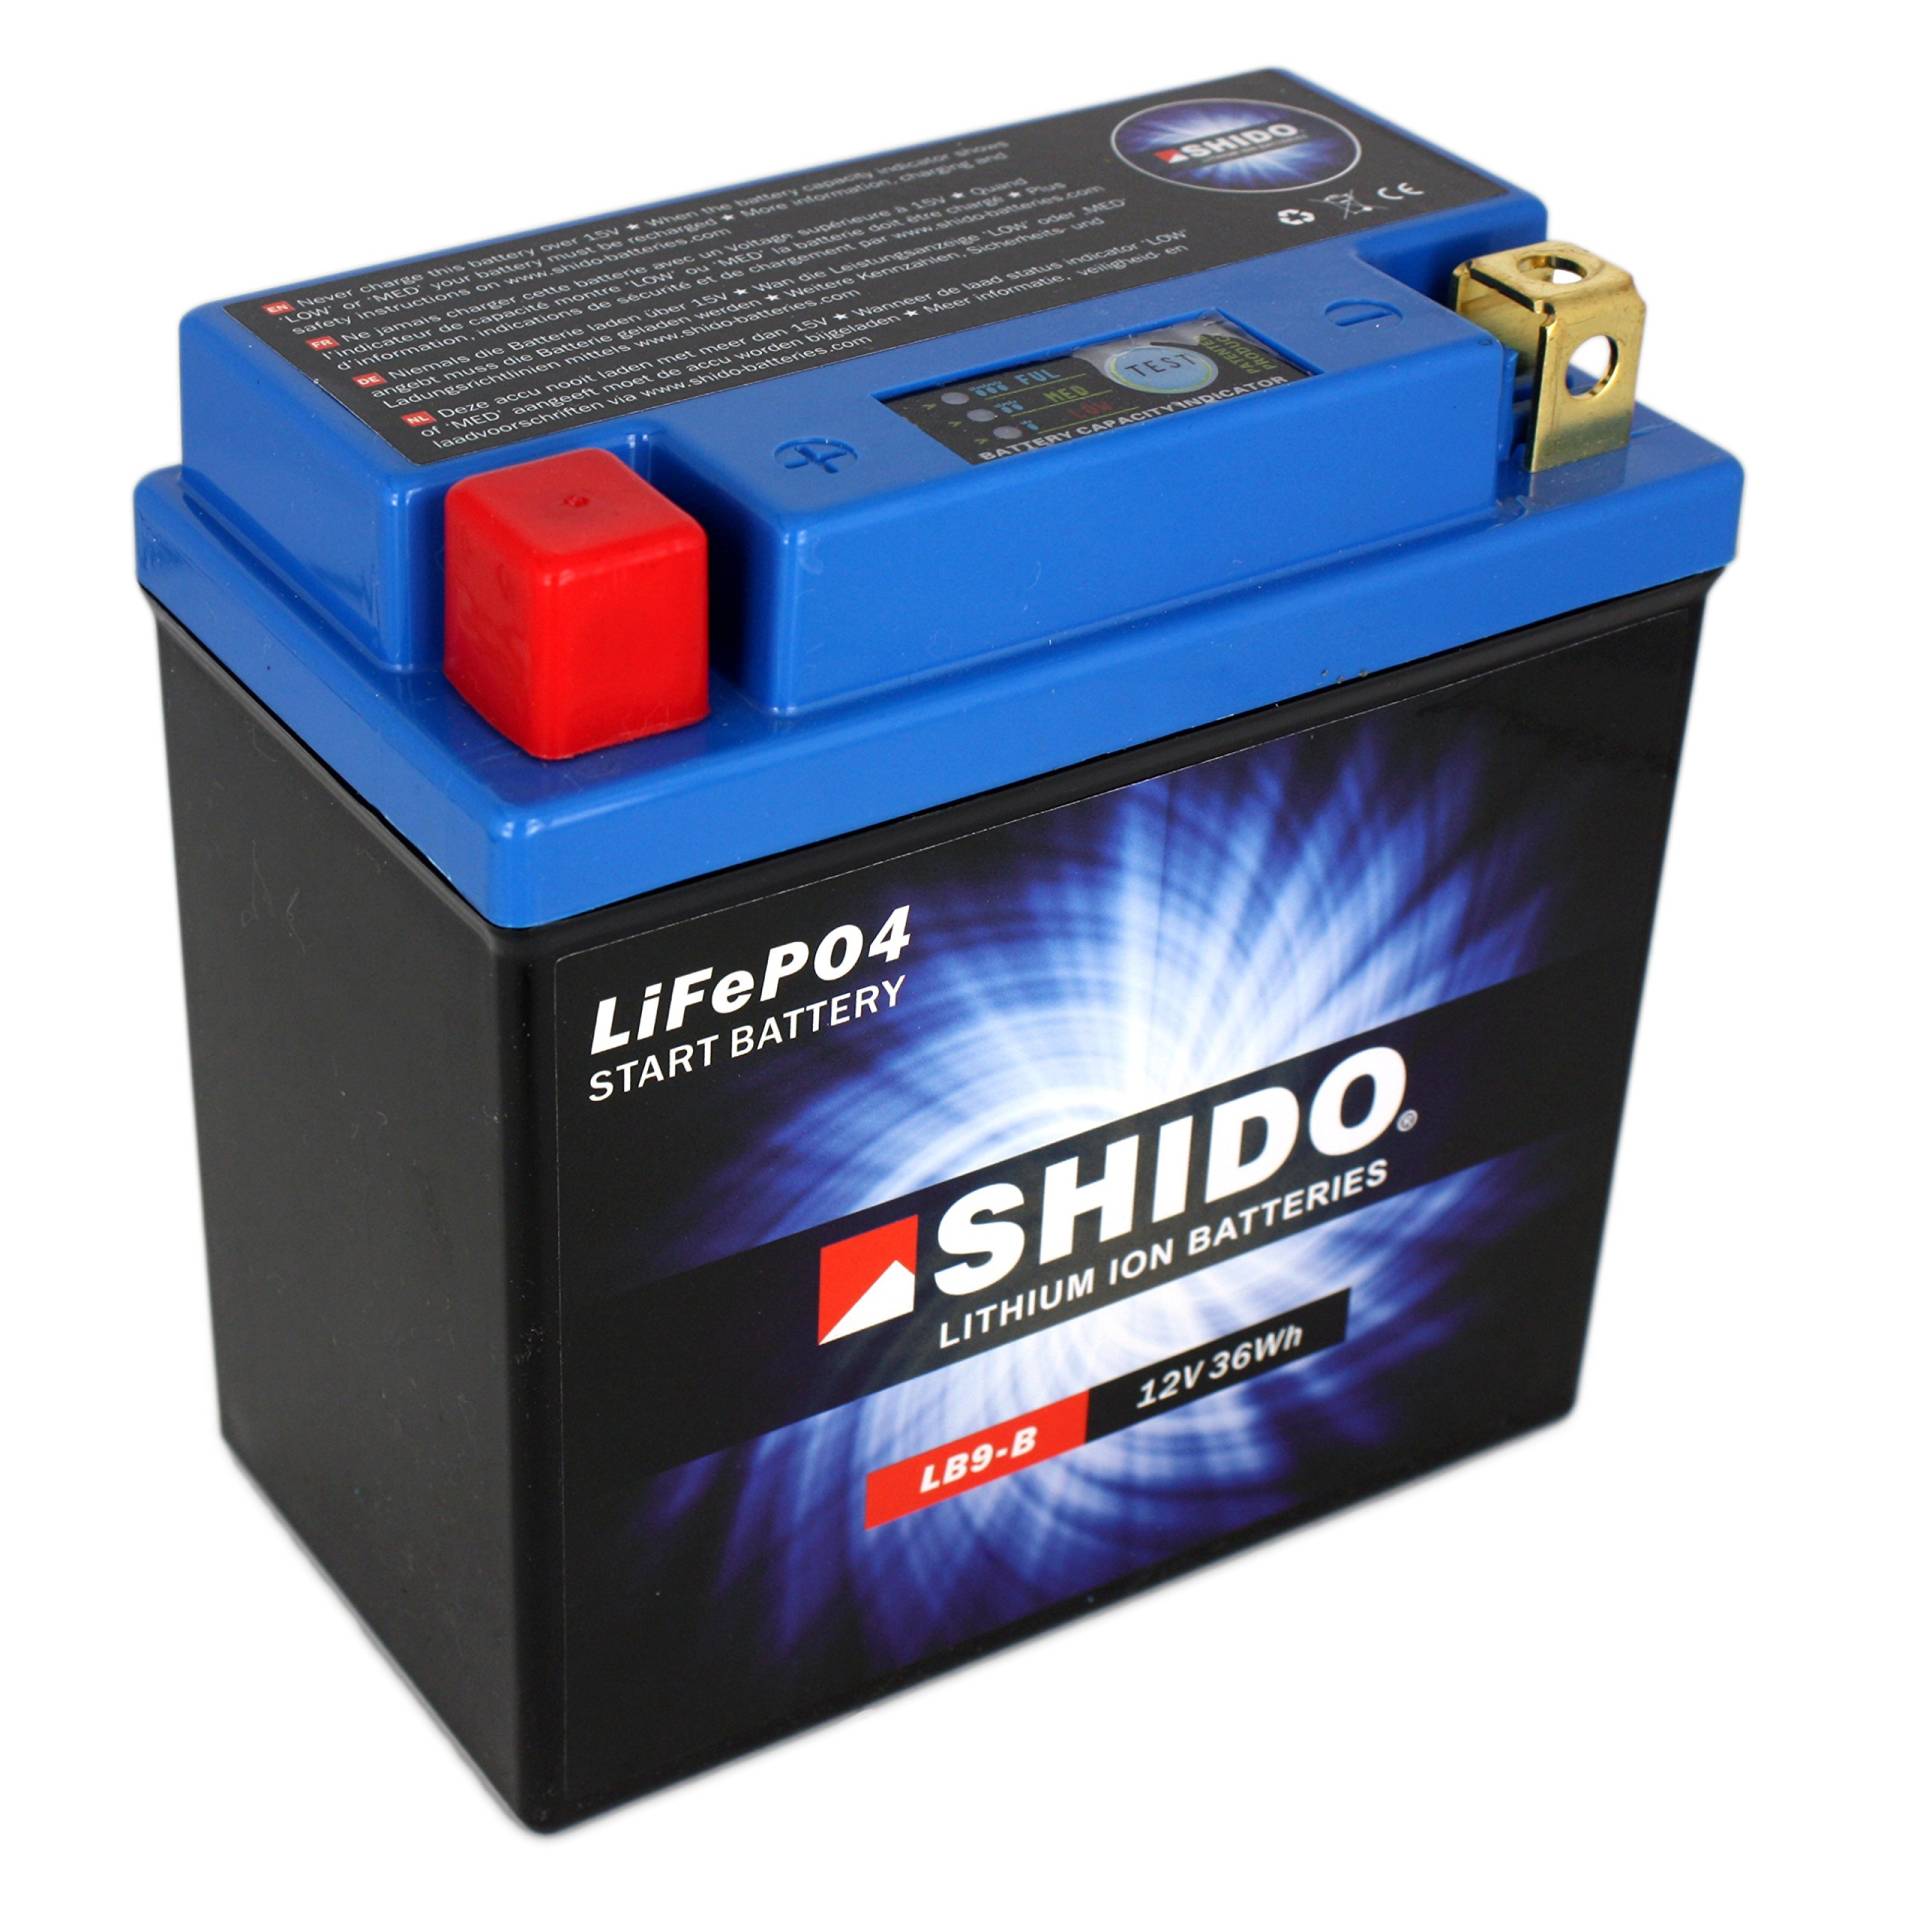 Batterie Shido Lithium LB9-B / YB9-B Quattro, 12V/9AH (Maße: 134x75x134) für Piaggio/Vespa S50 2-Takt Baujahr 2007 von Shido